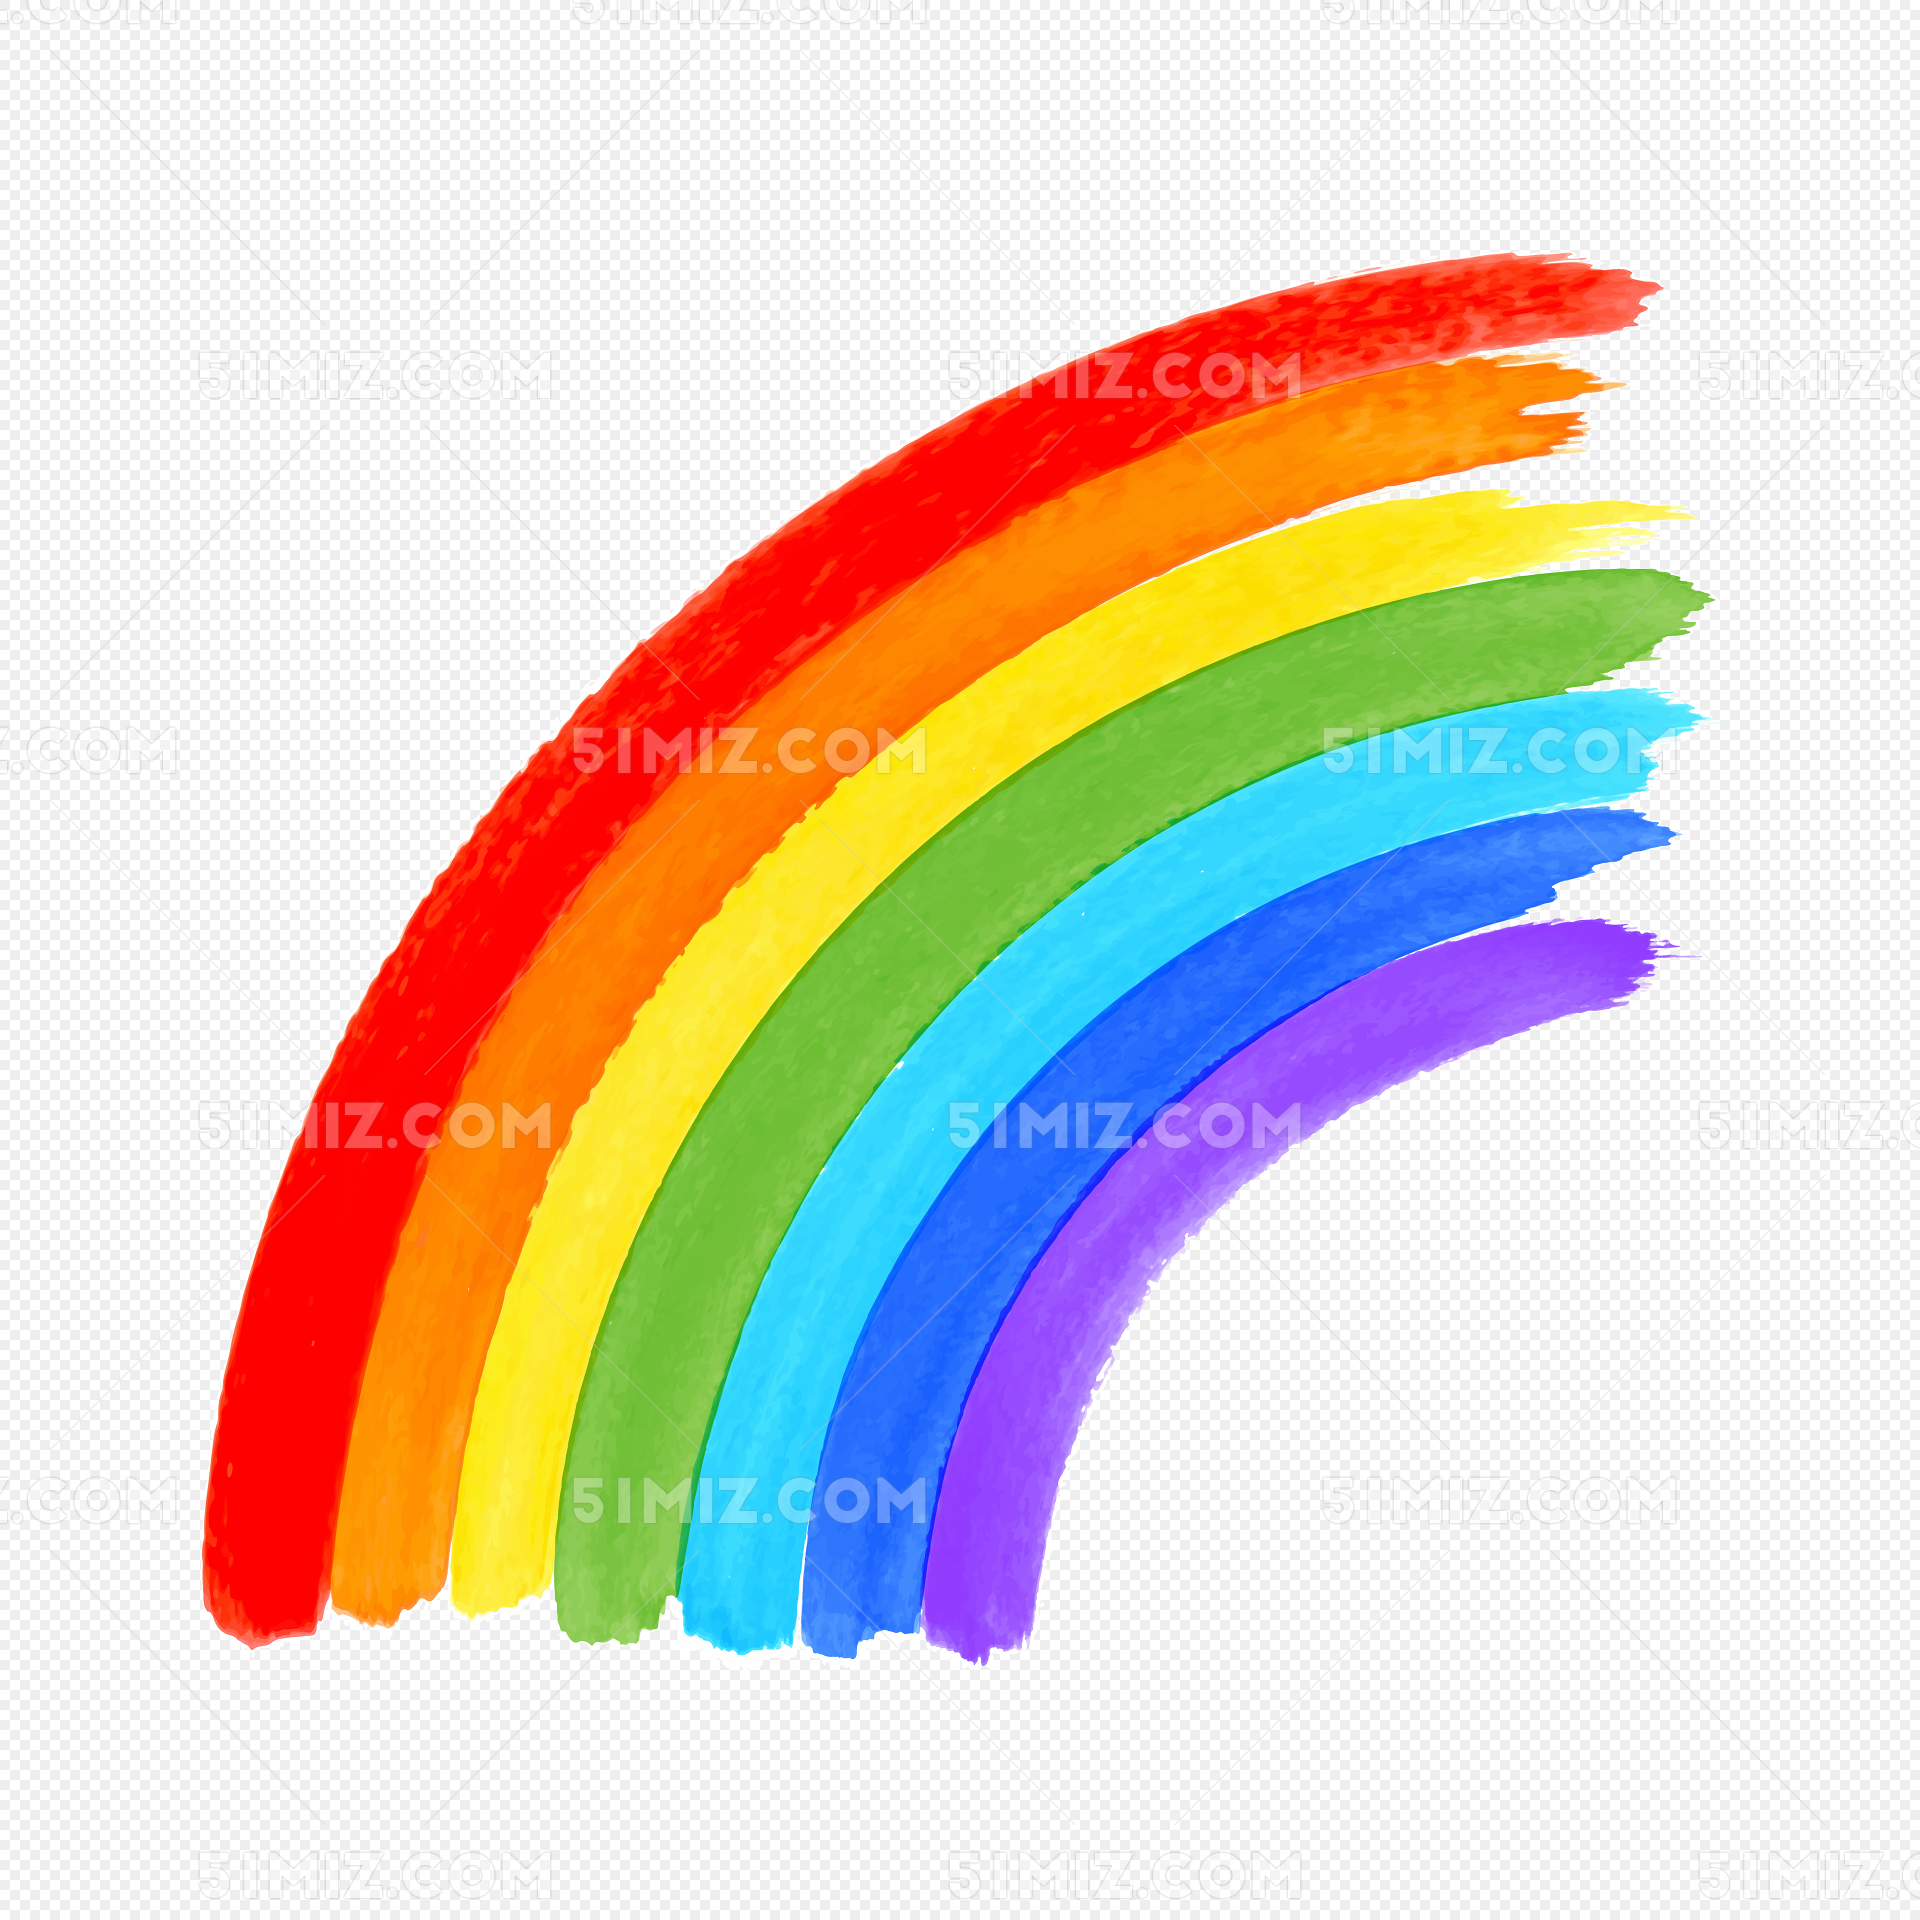 彩虹AI圖案素材免費下載 - 尺寸2000 × 2000px - 圖形ID401235548 - Lovepik